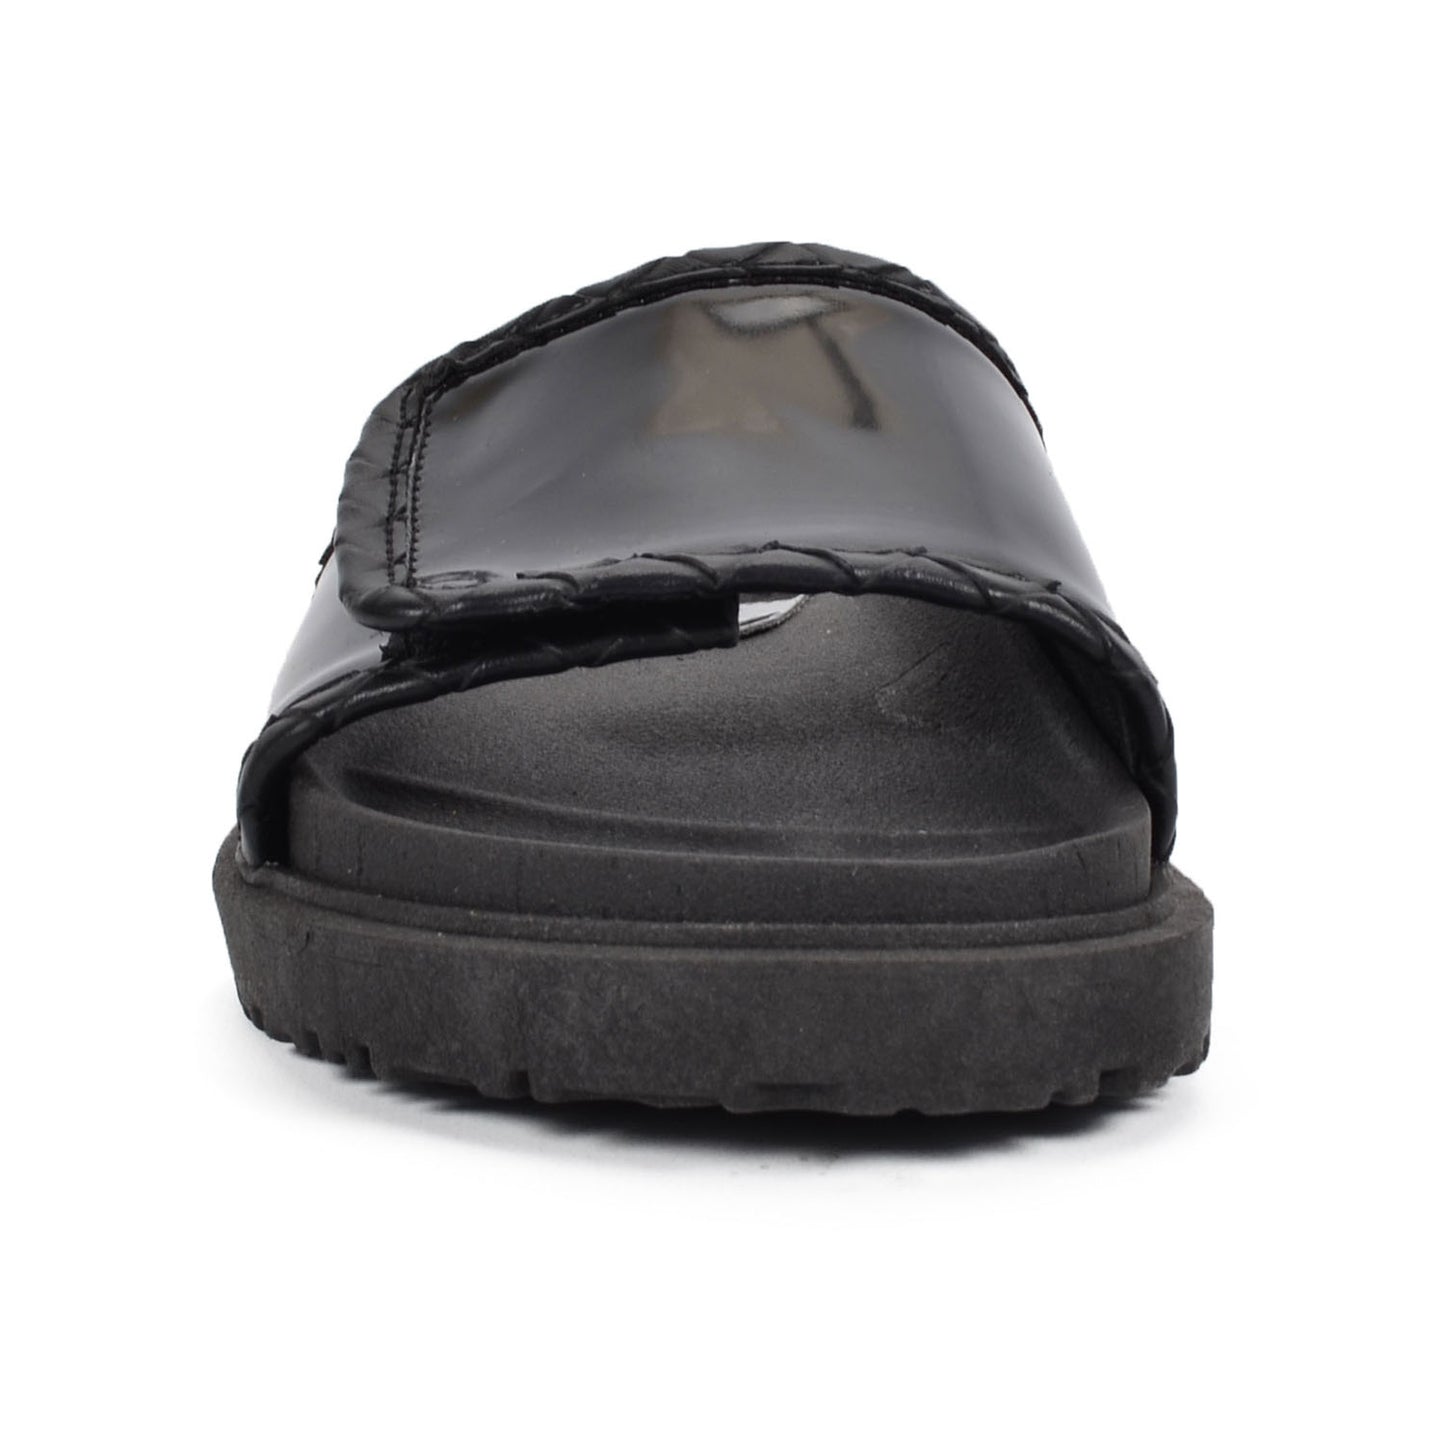 Francia Black | Patent Leather Slide Sandals